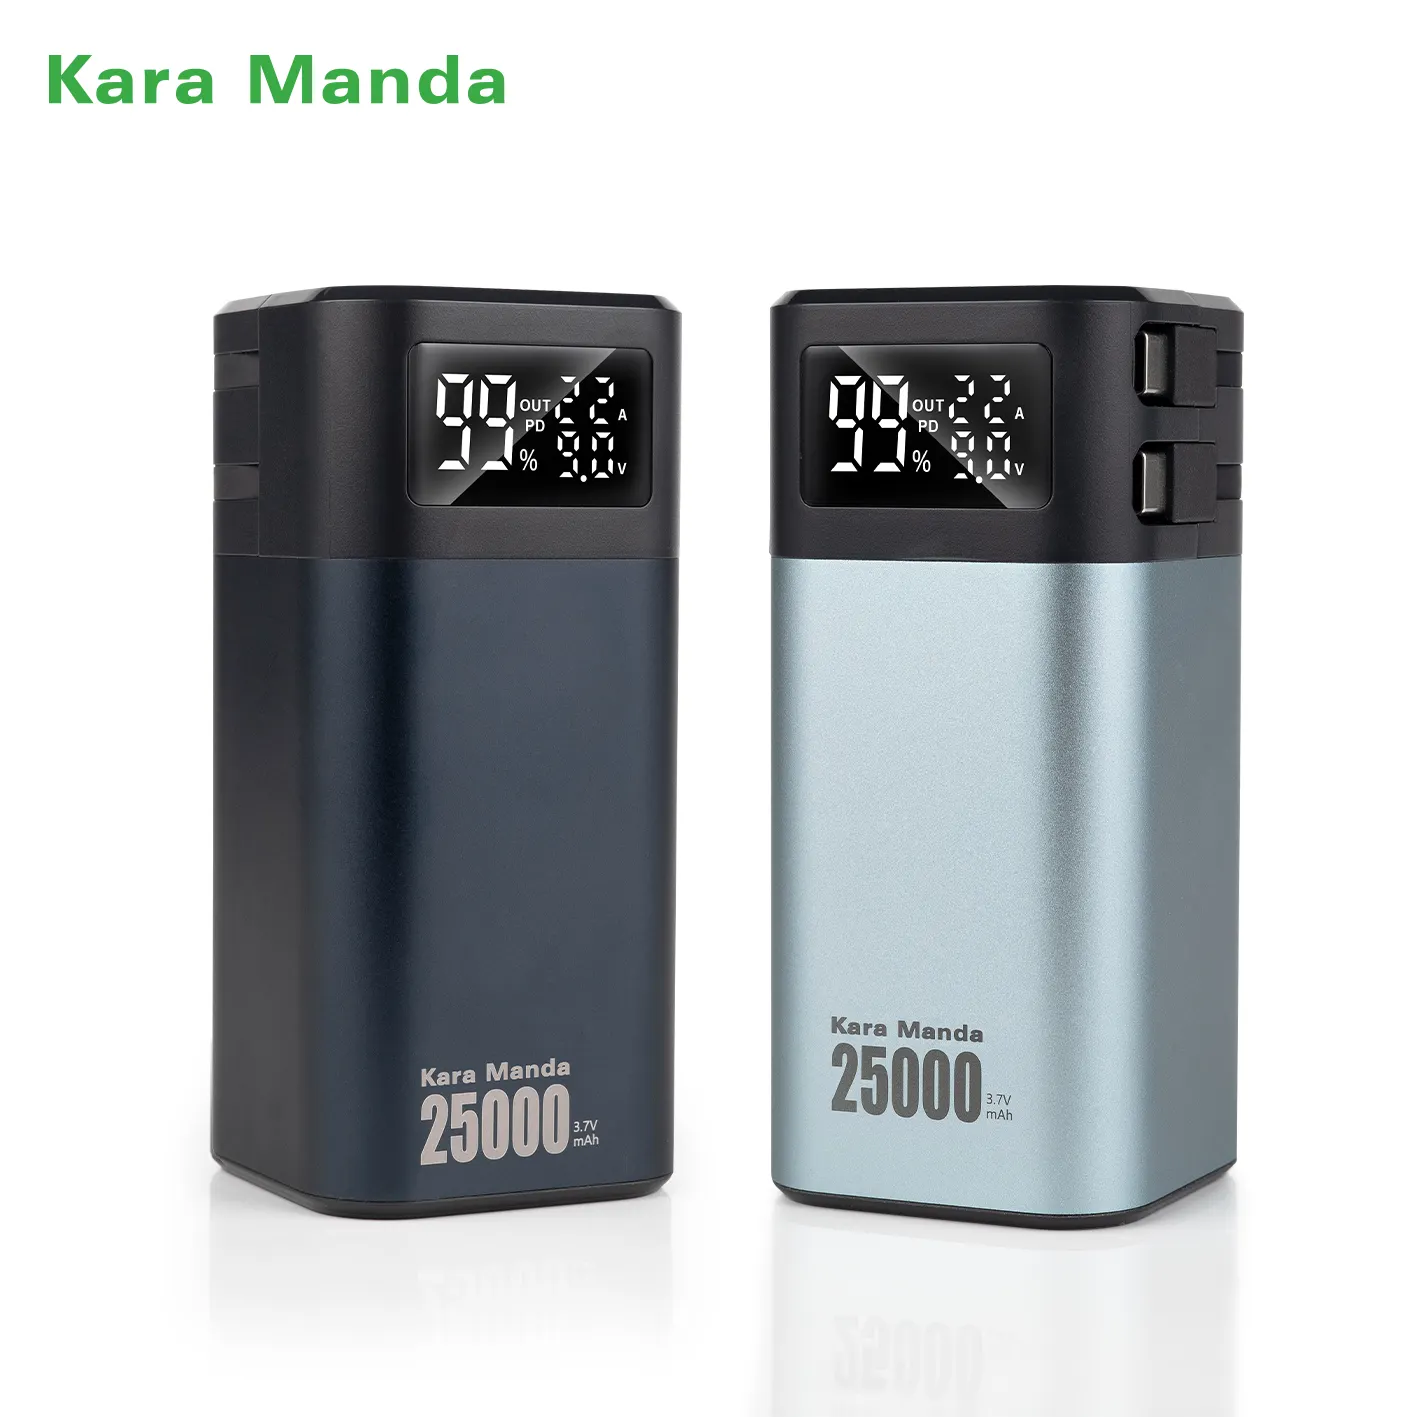 Banco de energía de calibre de coche Kara Manda de alta calidad 4680 para Tesla, Banco de energía de gran capacidad de 25000mAh, Banco de energía portátil de carga rápida